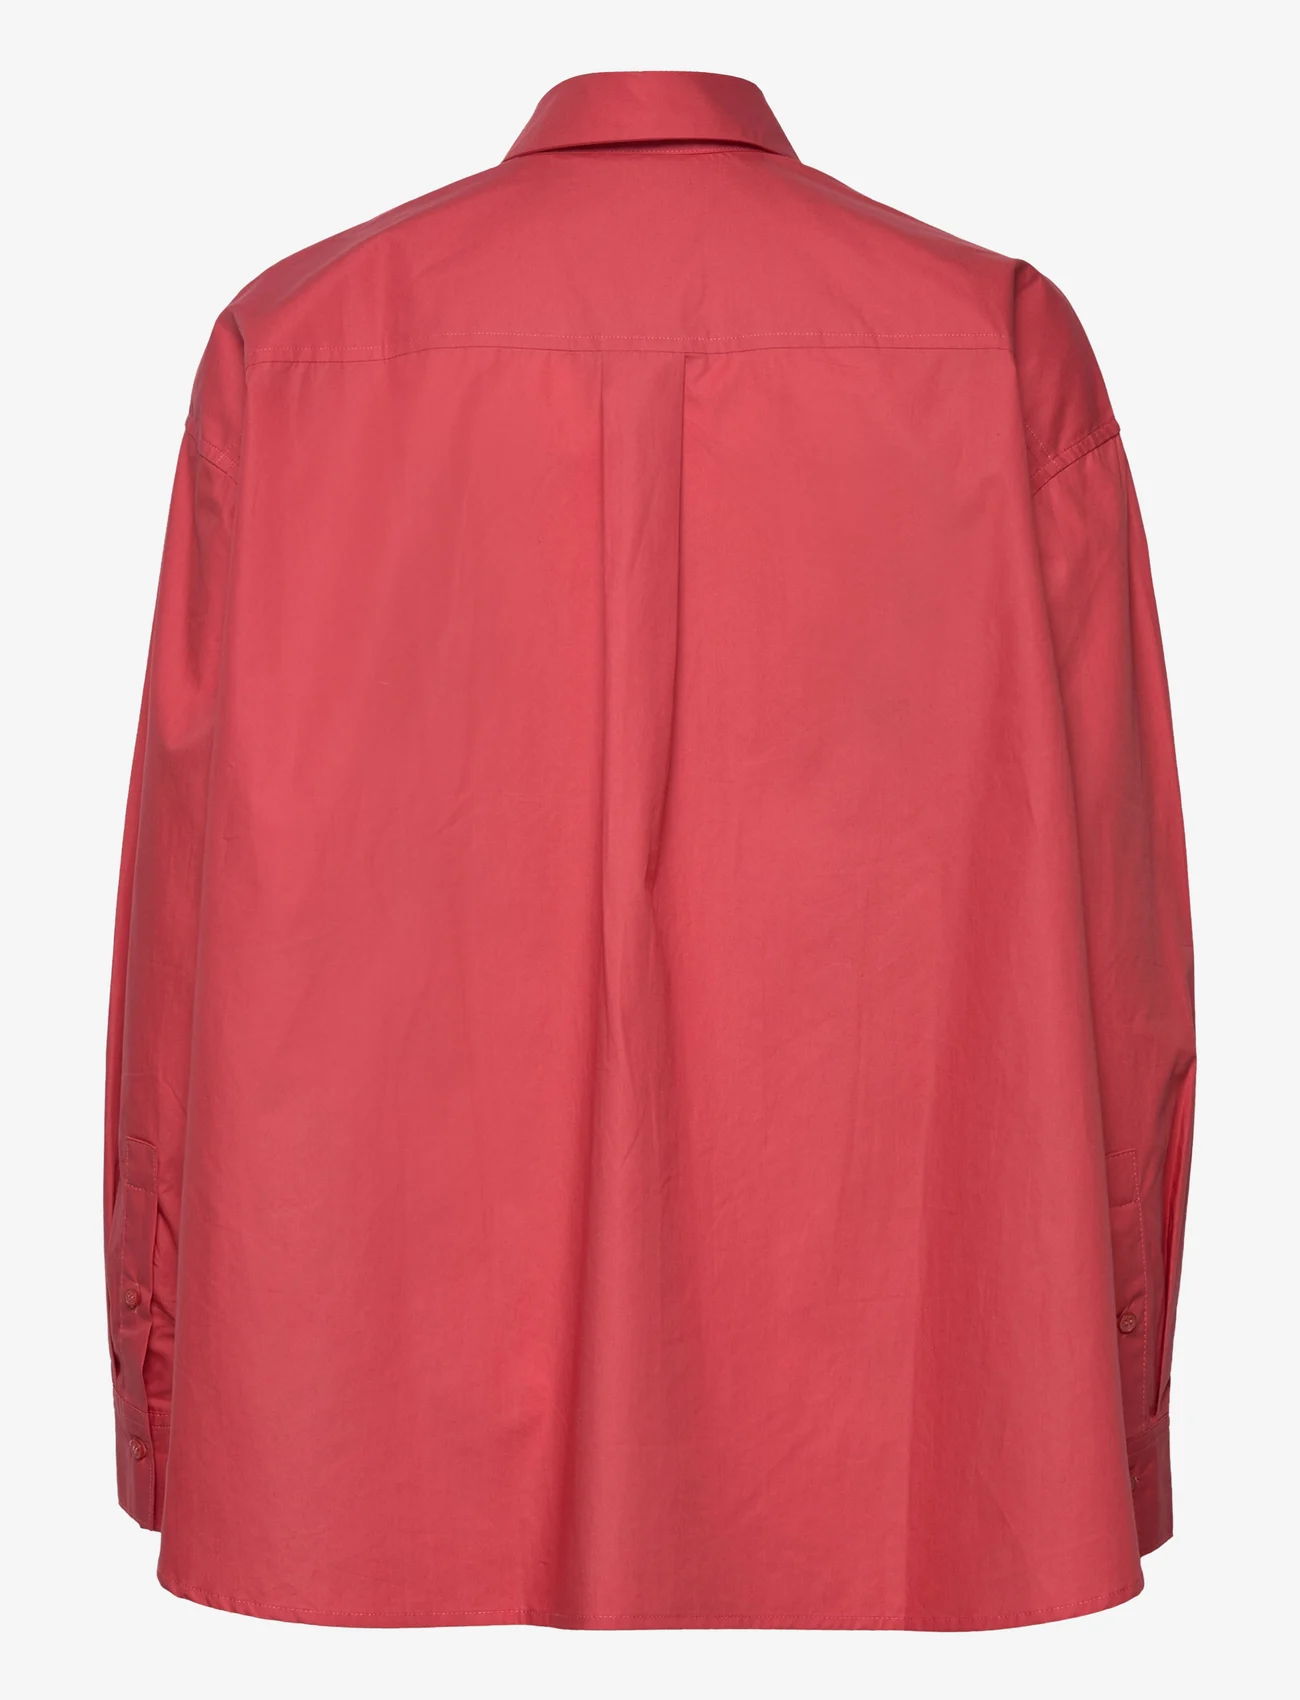 IVY OAK - BETHANY LILLY WIDE BLOUSE - overhemden met lange mouwen - berry glaze - 1